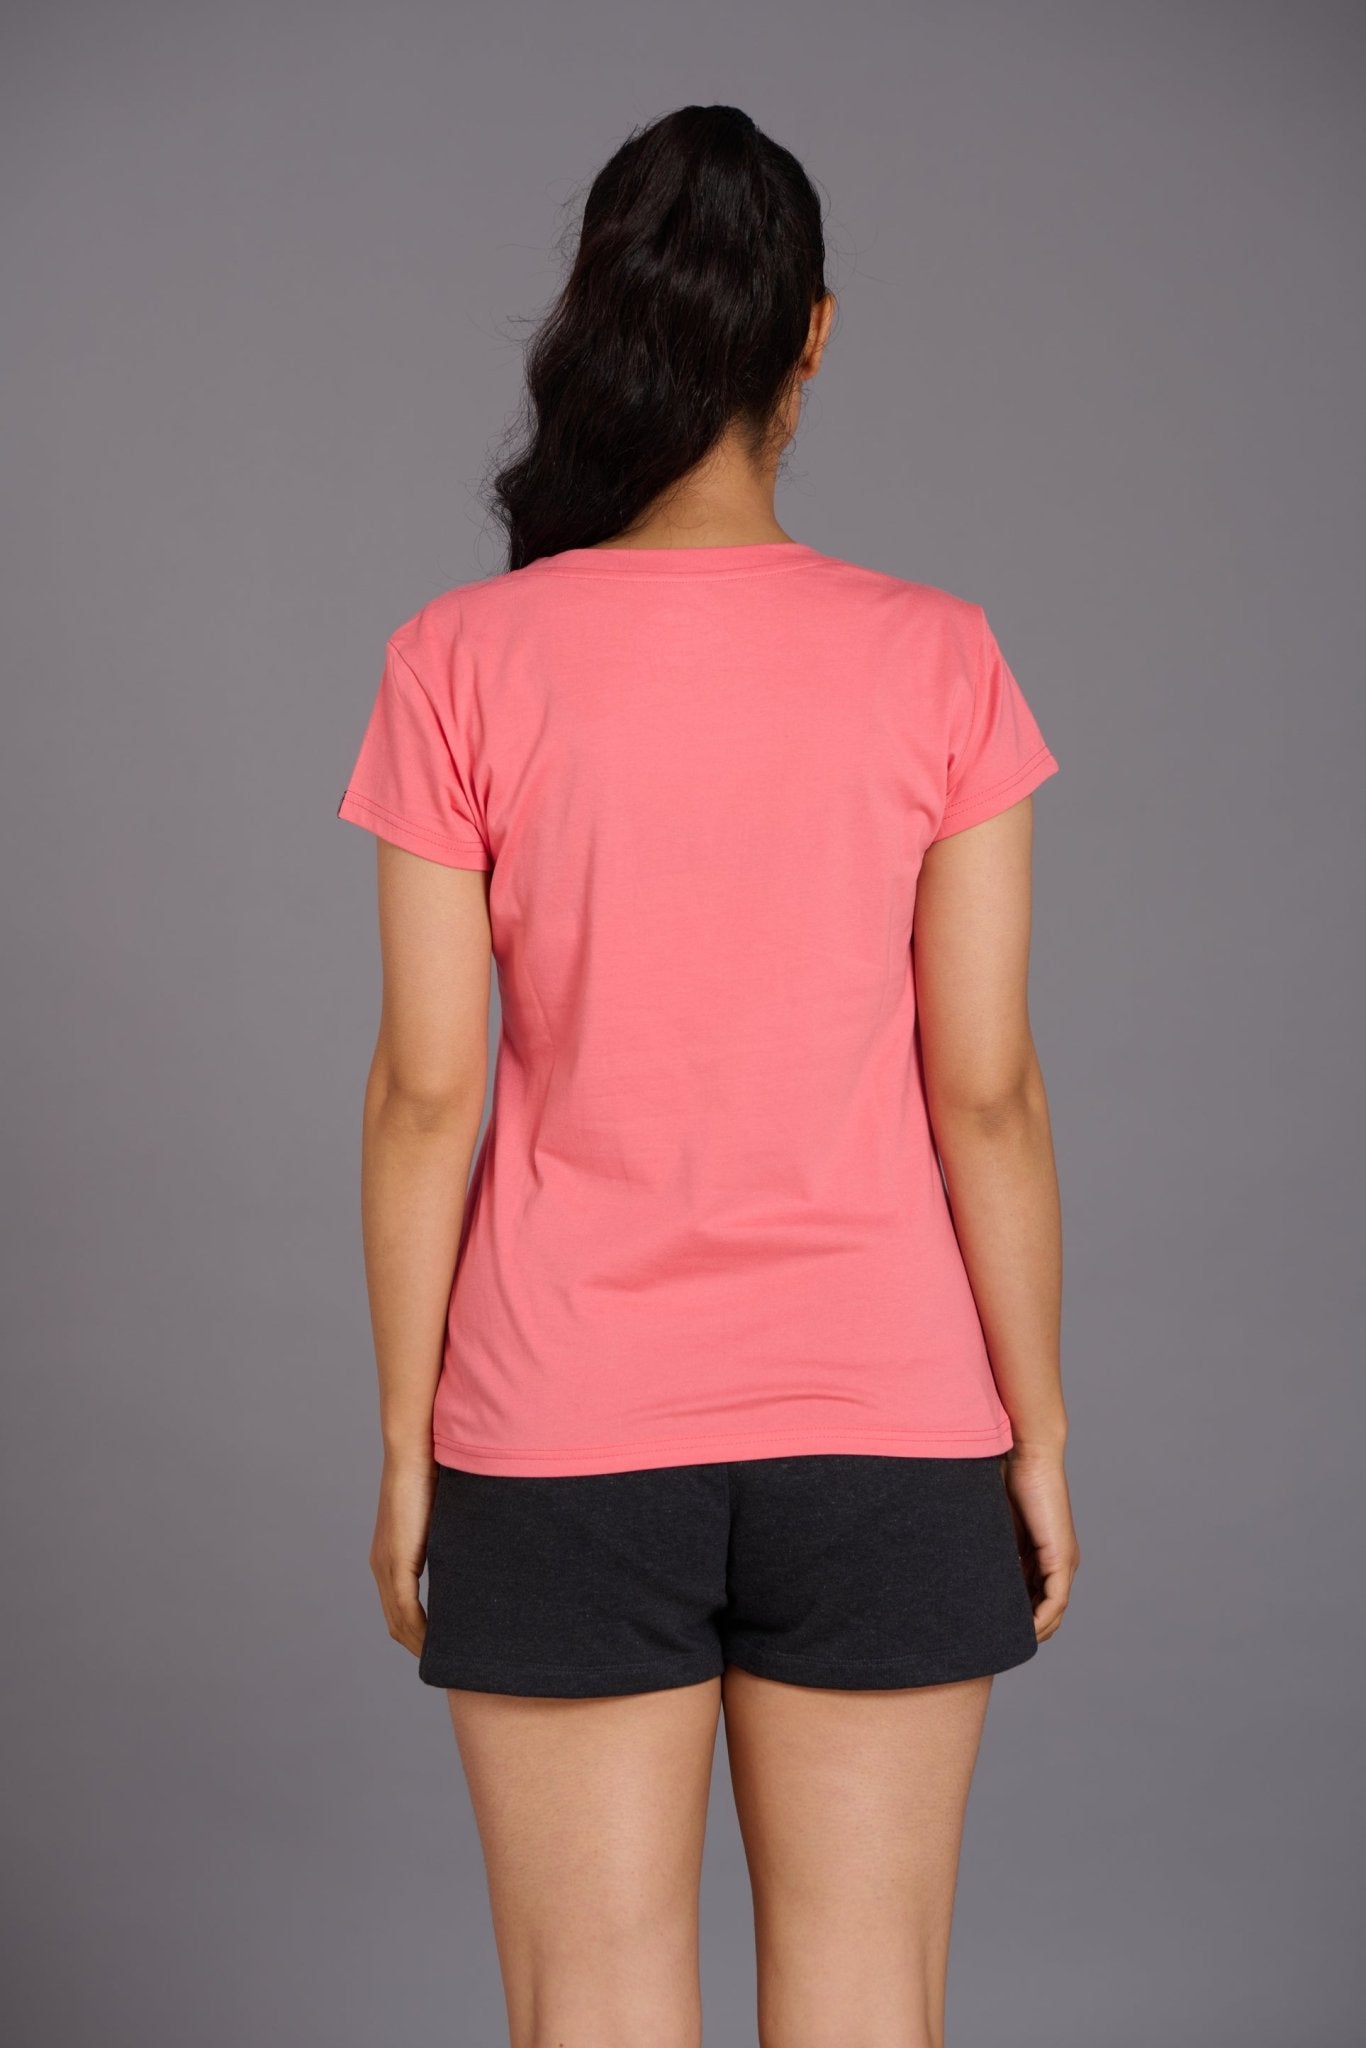 Angelic Pink Oversized T-Shirt for Women - Go Devil